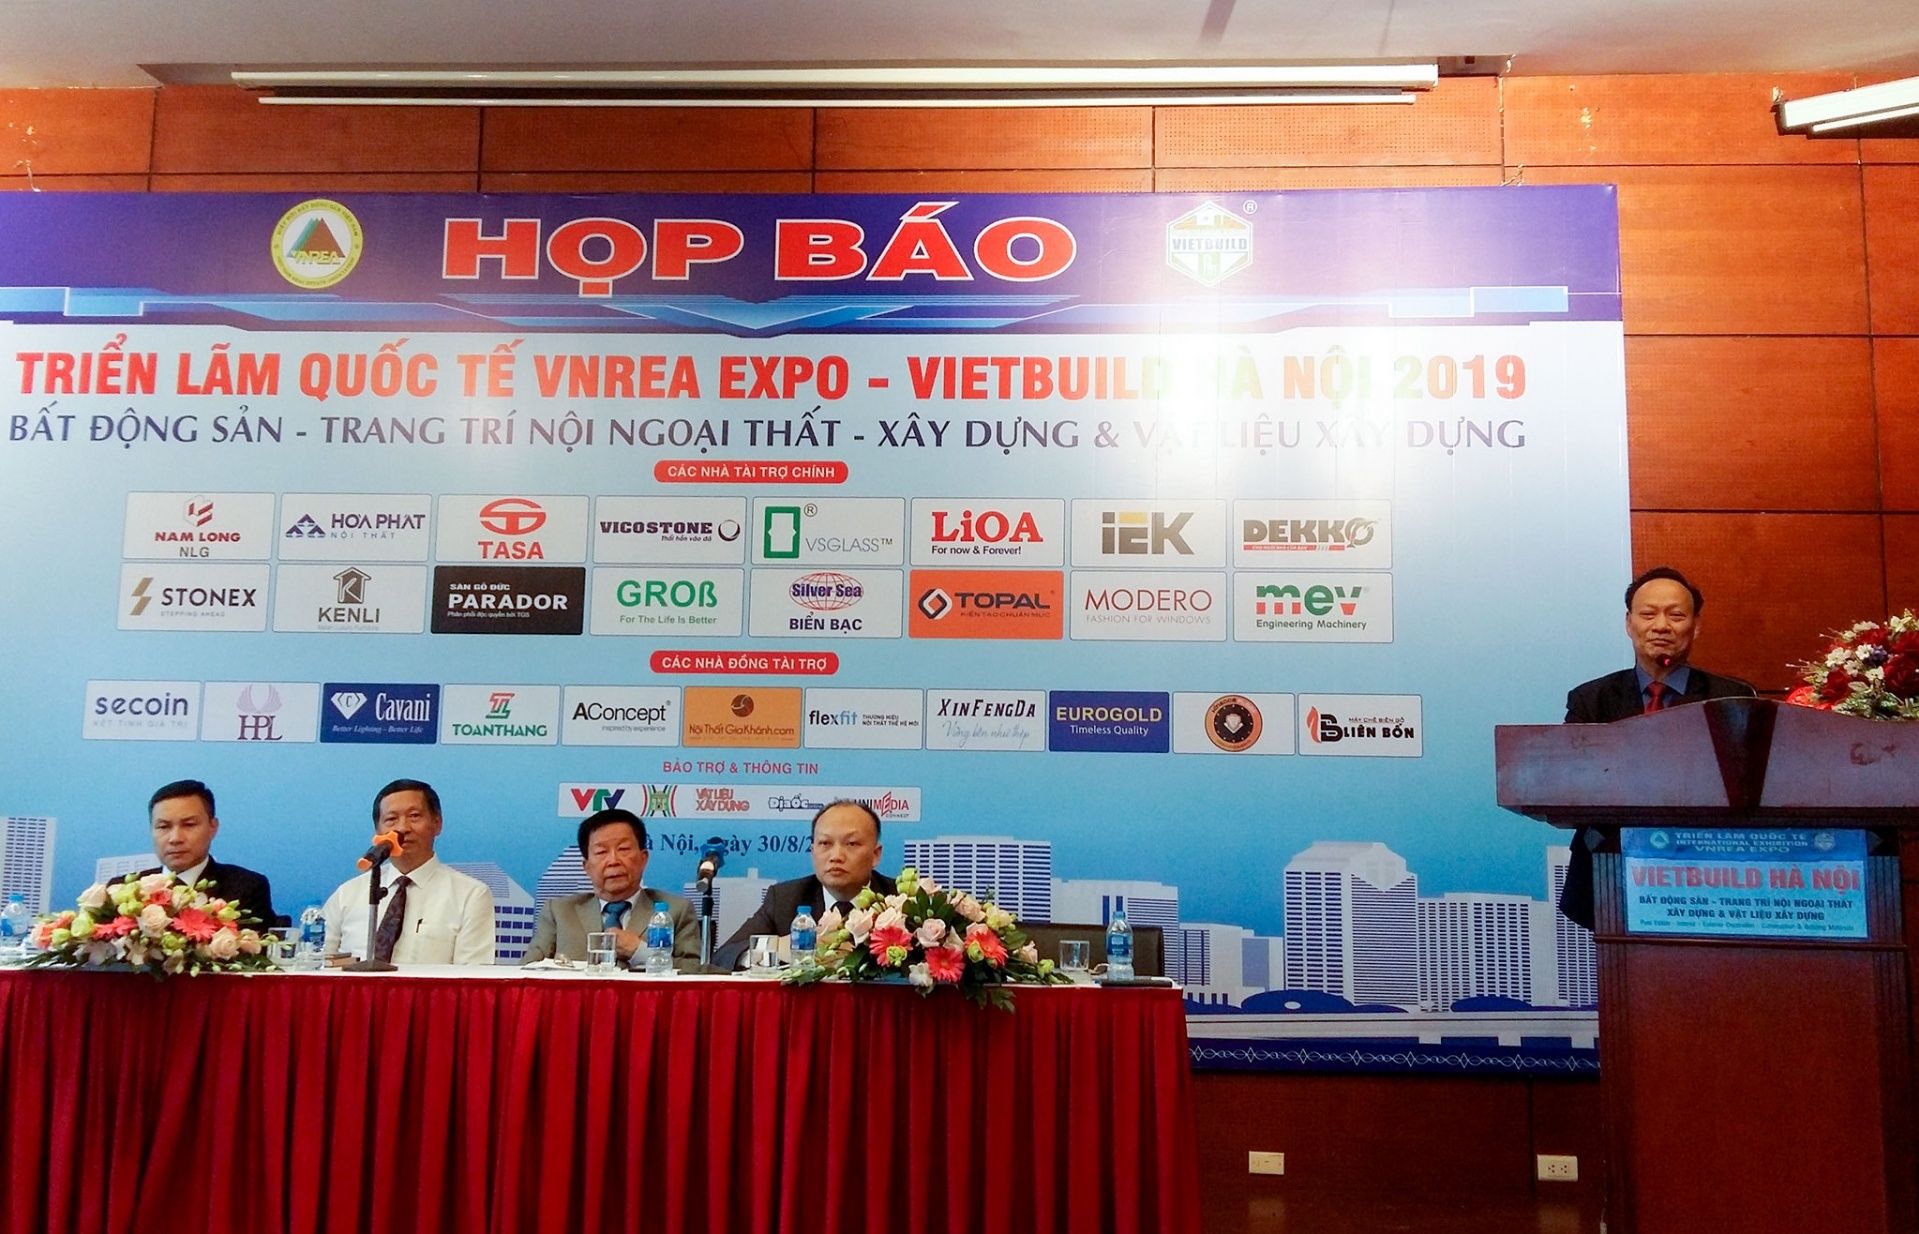 Hơn 100 doanh nghiệp nước ngoài tham gia triển lãm Vietbuild Hà Nội 2019 lần 2